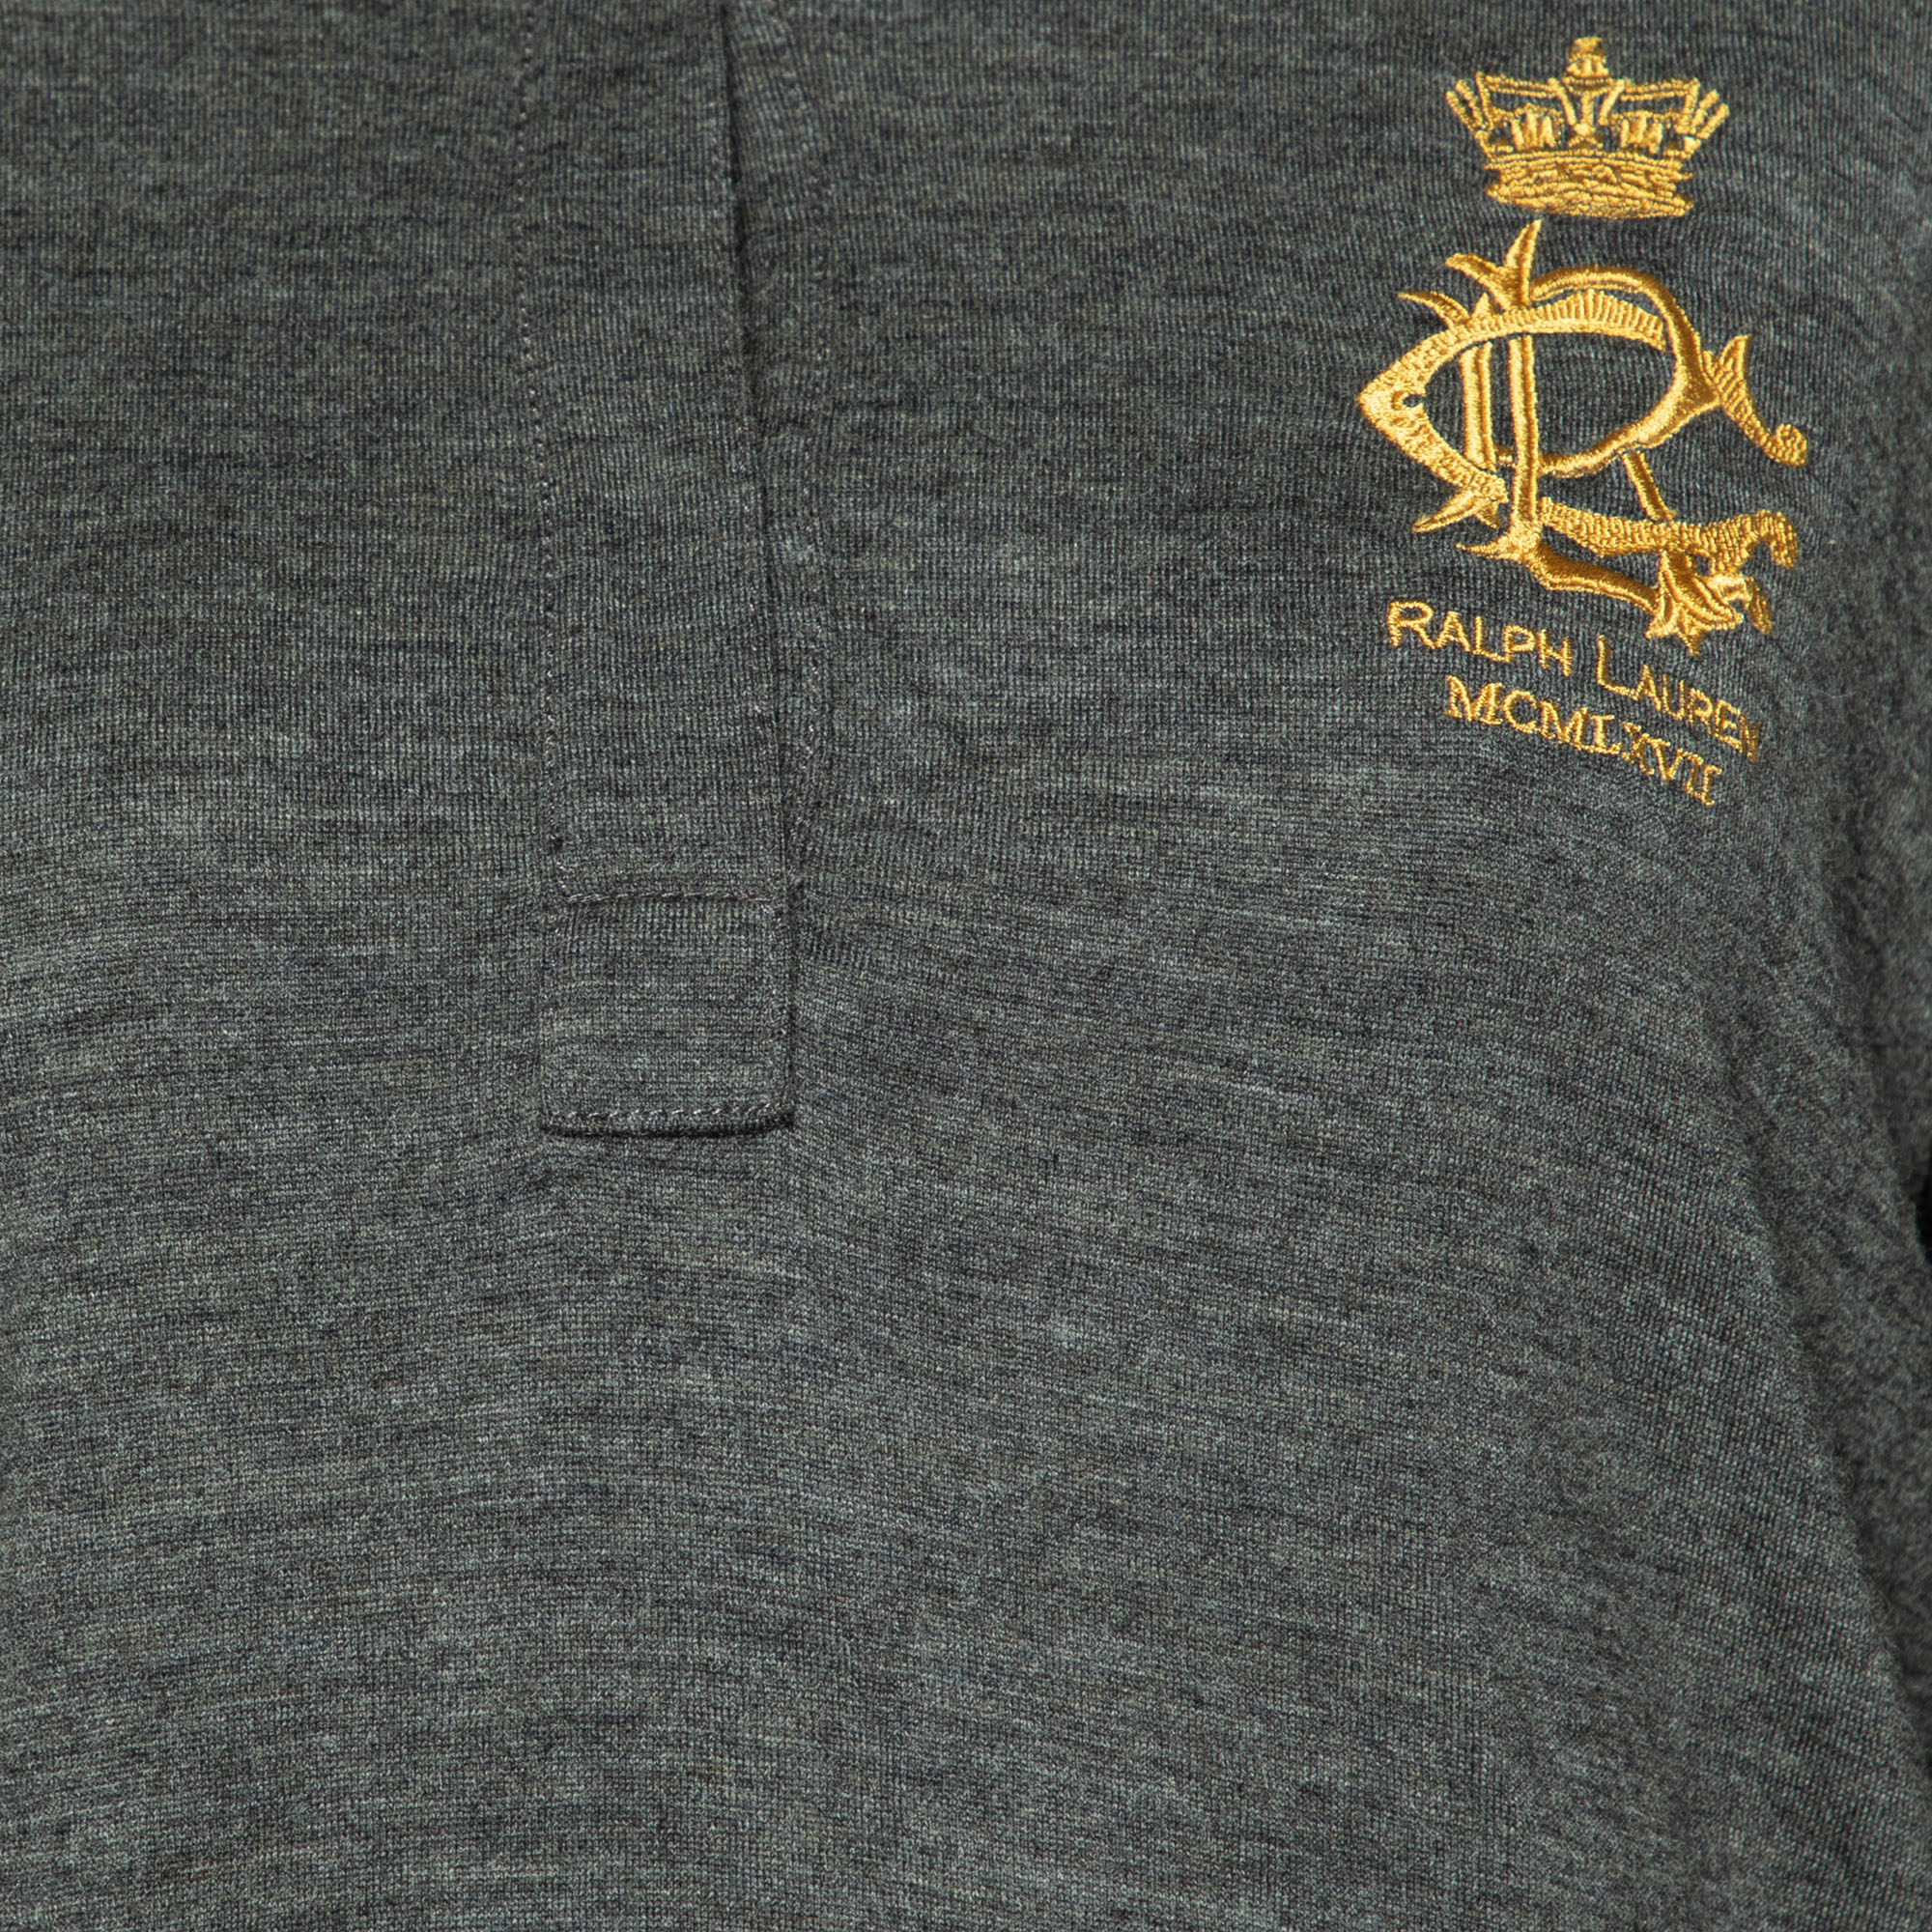 Ralph Lauren Dark Grey Wool & Cashmere Long Sleeve Polo T-Shirt XL